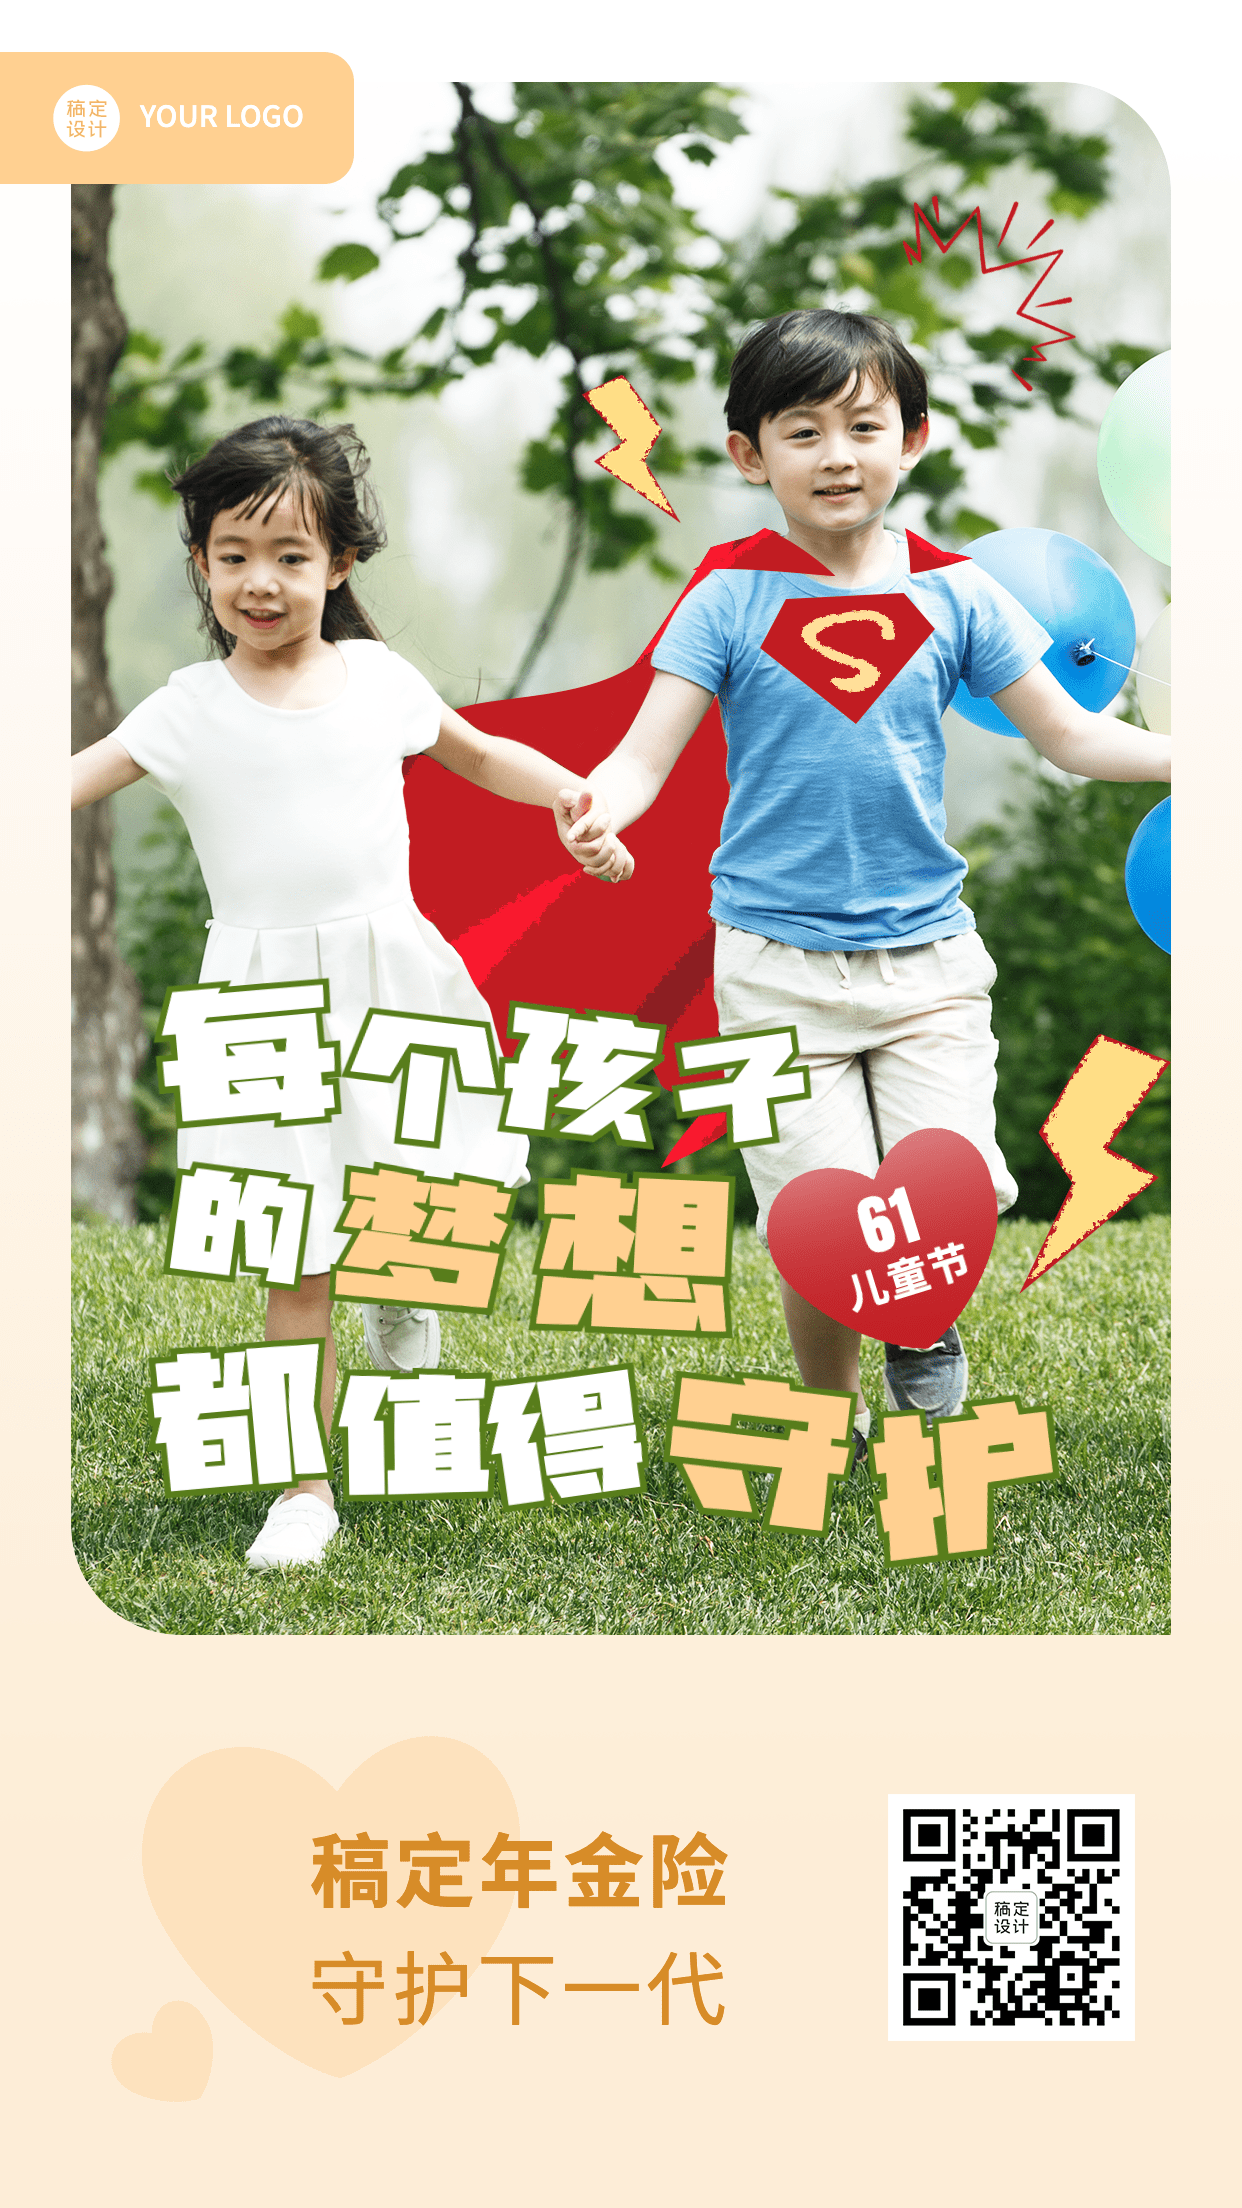 金融保险61儿童节节日祝福实景风手机海报